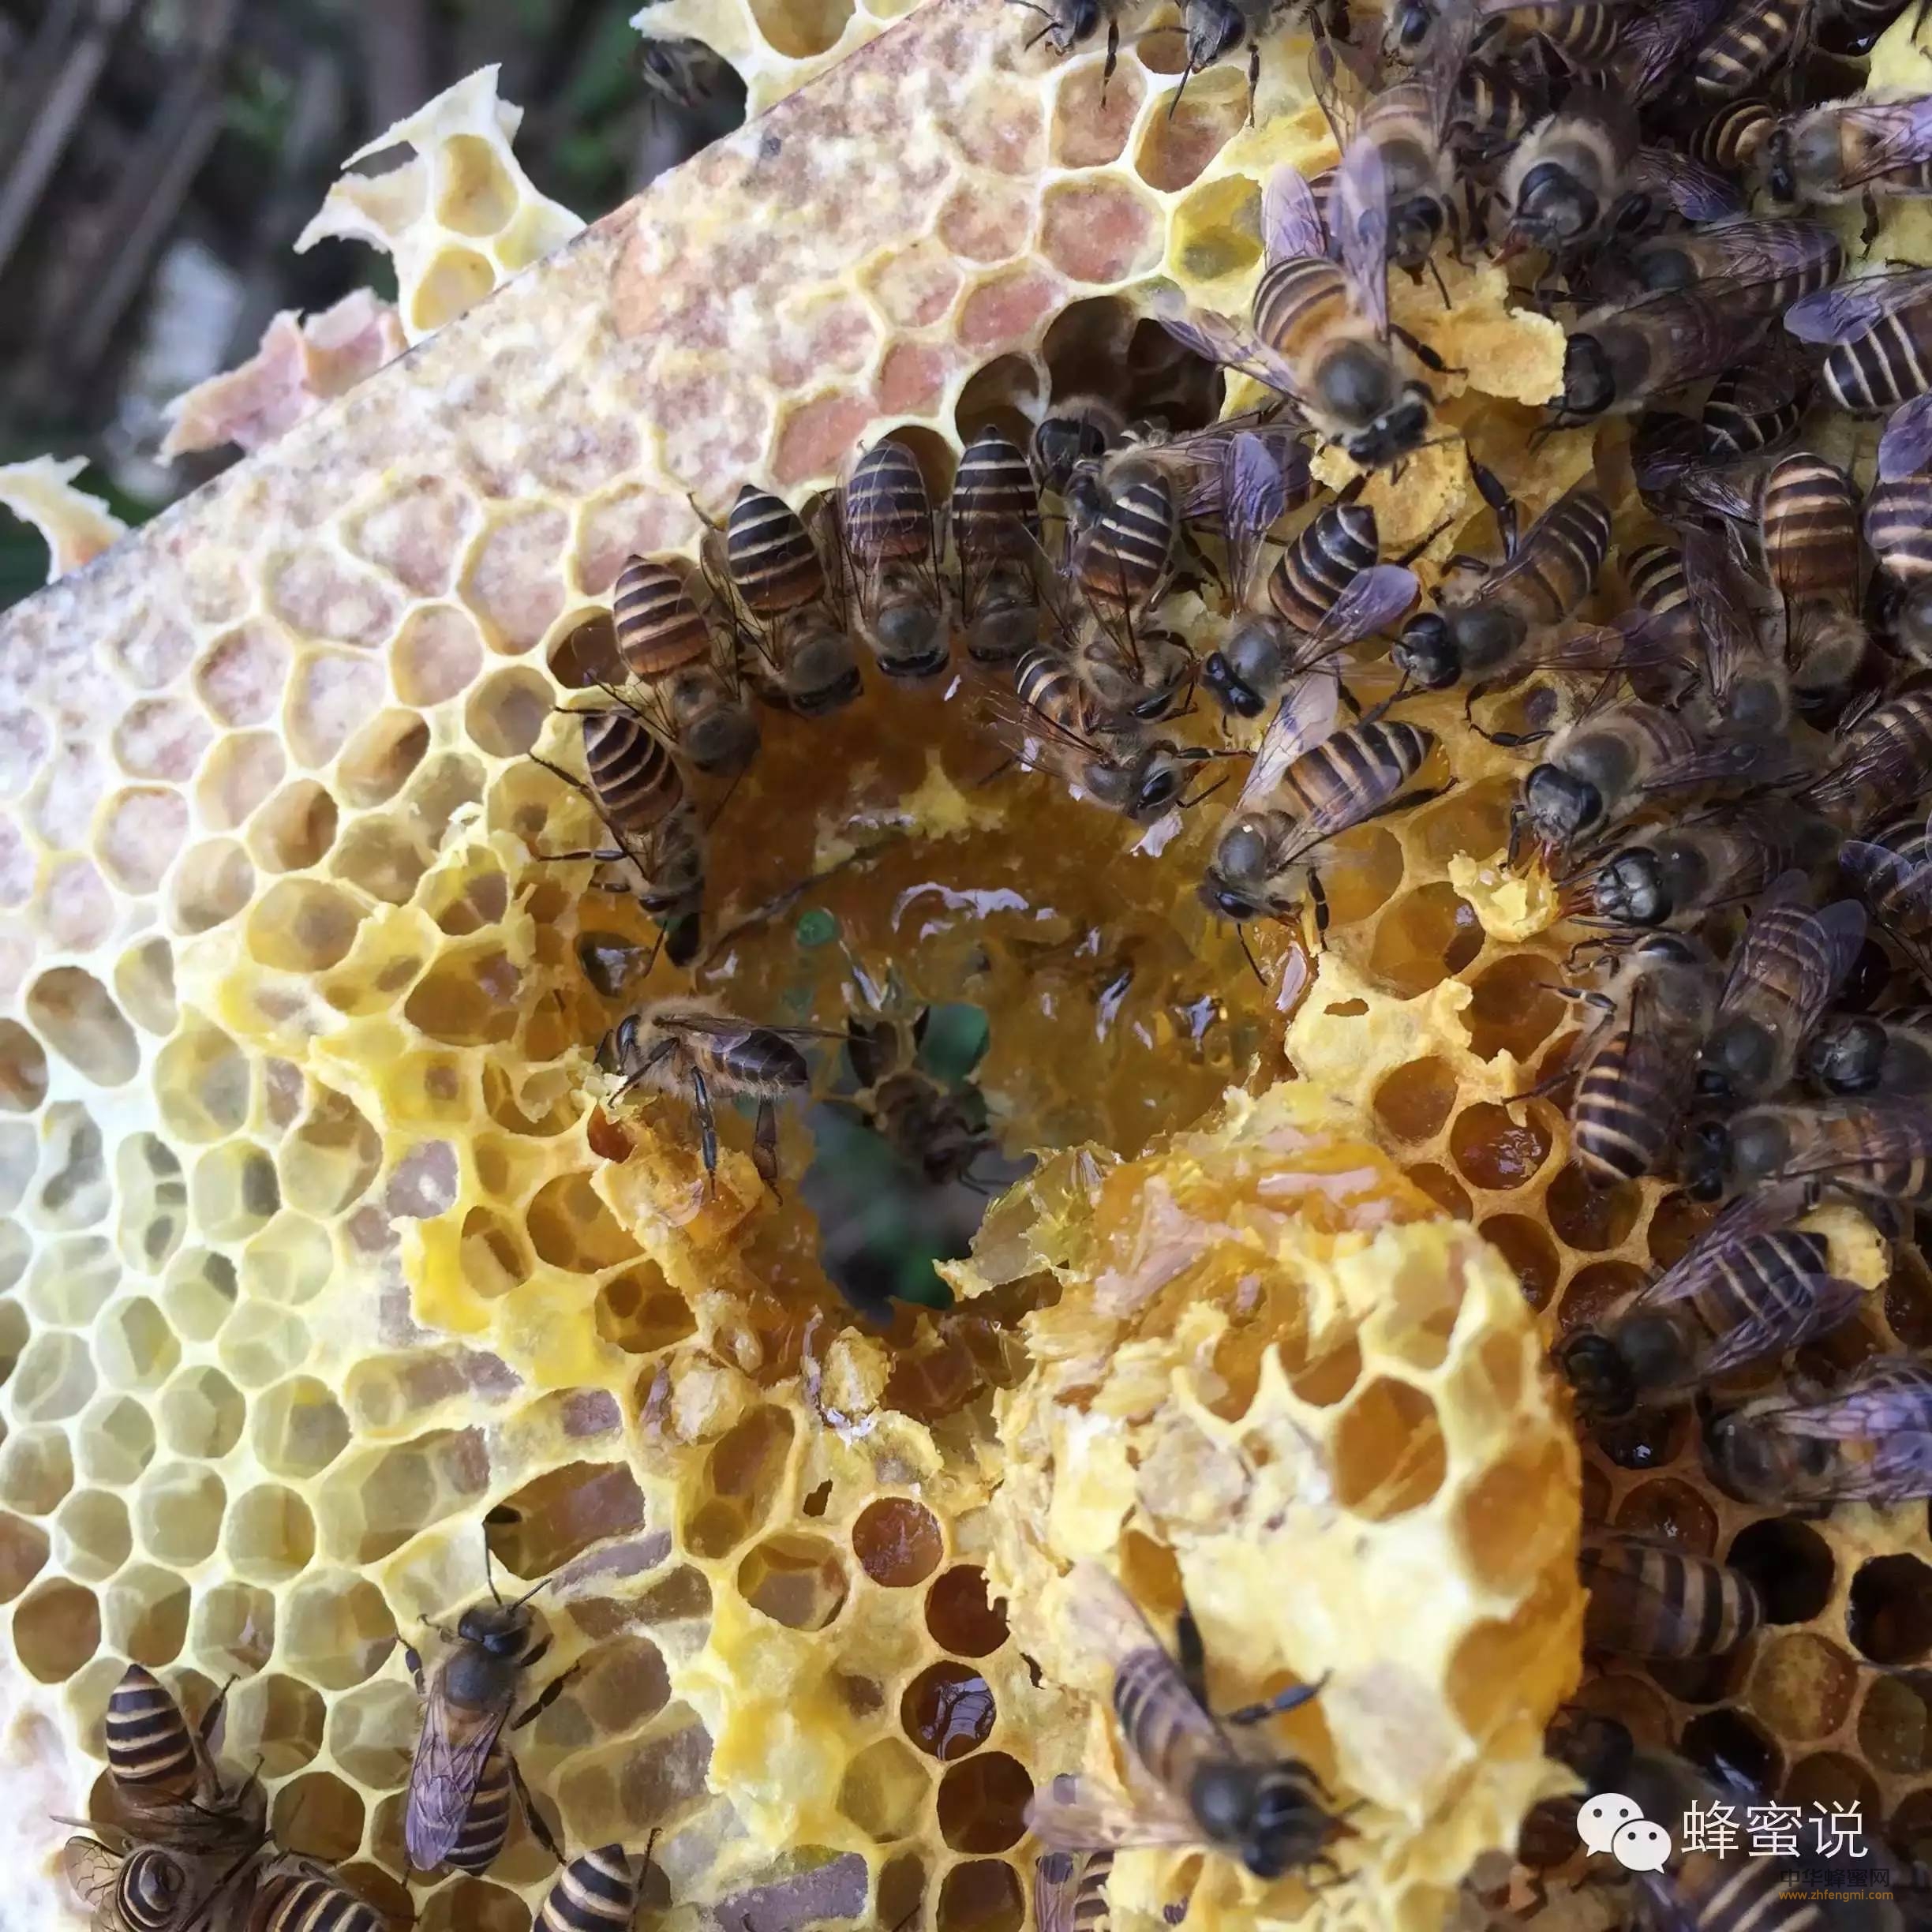 全球蜂蜜产量及主要蜜源产区盘点——南美洲蜜源